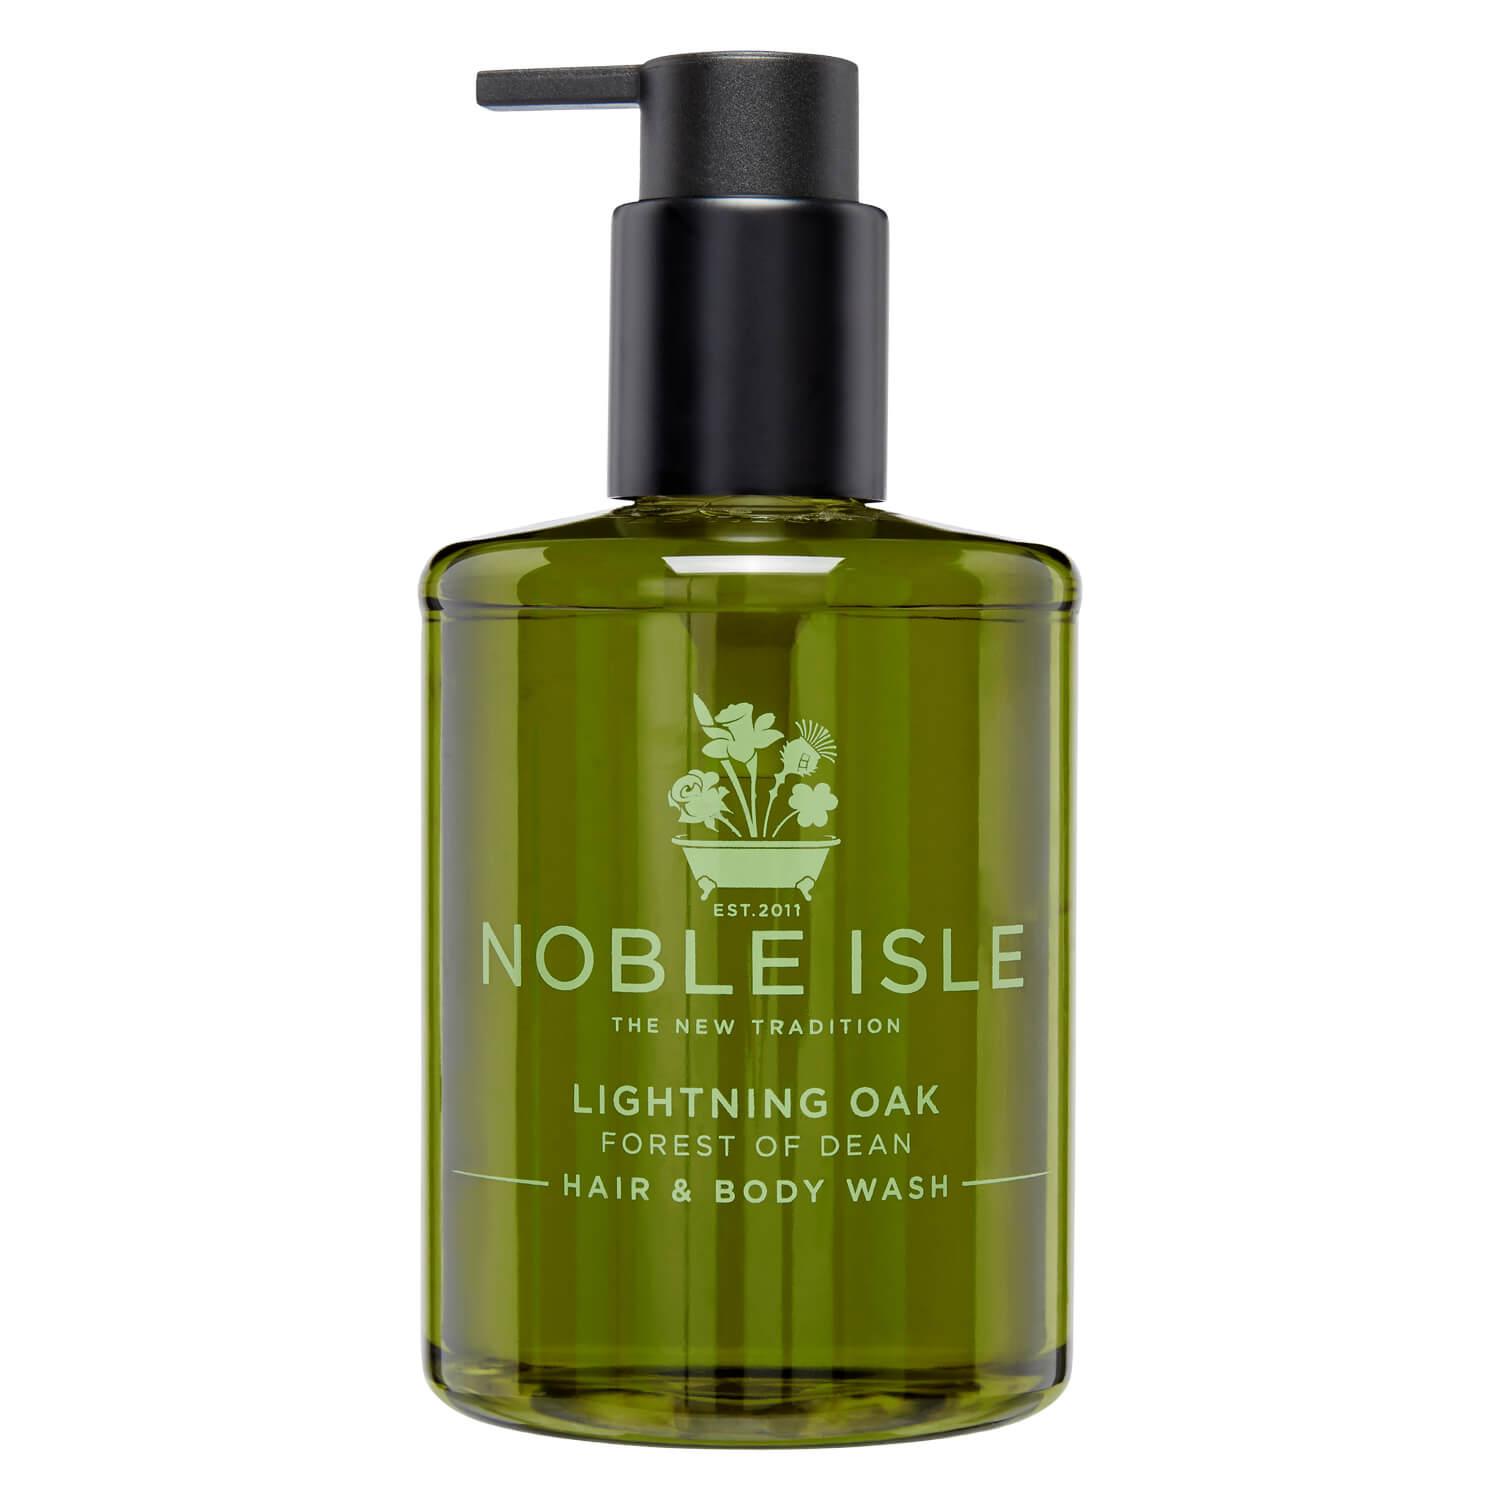 Noble Isle - Lightning Oak Hair & Body Wash